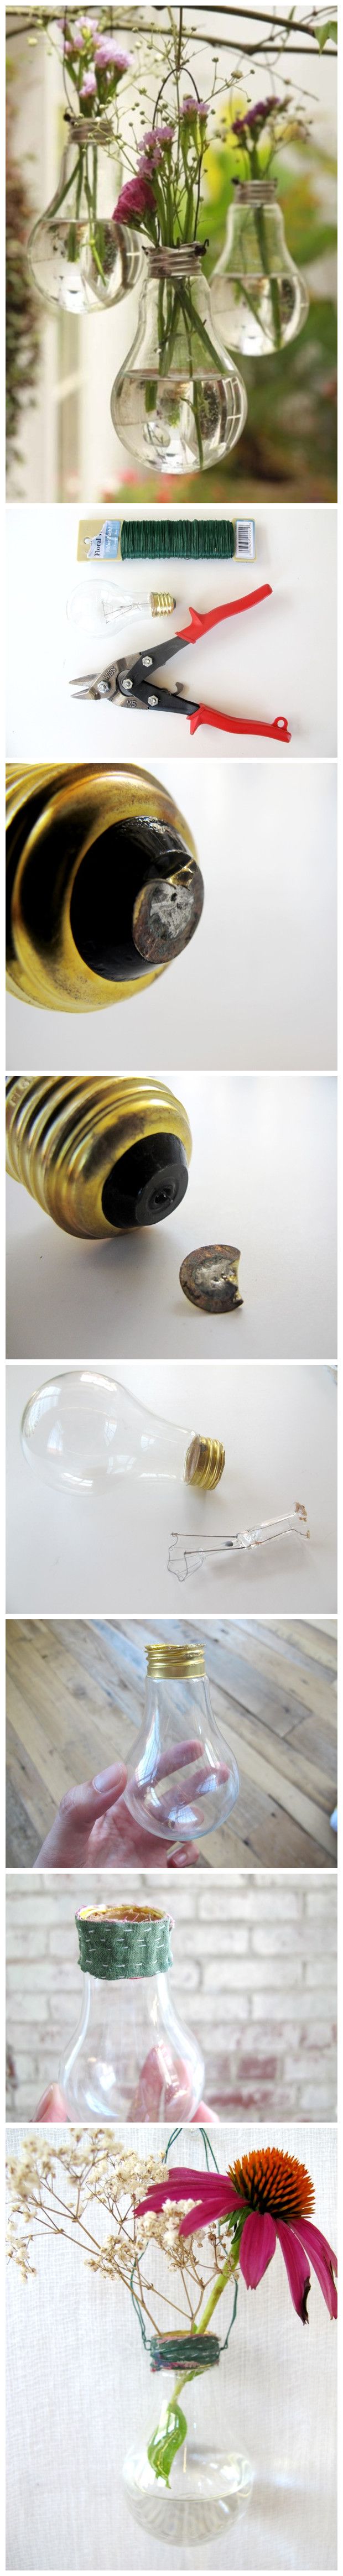 DIY lightbulb flower vase